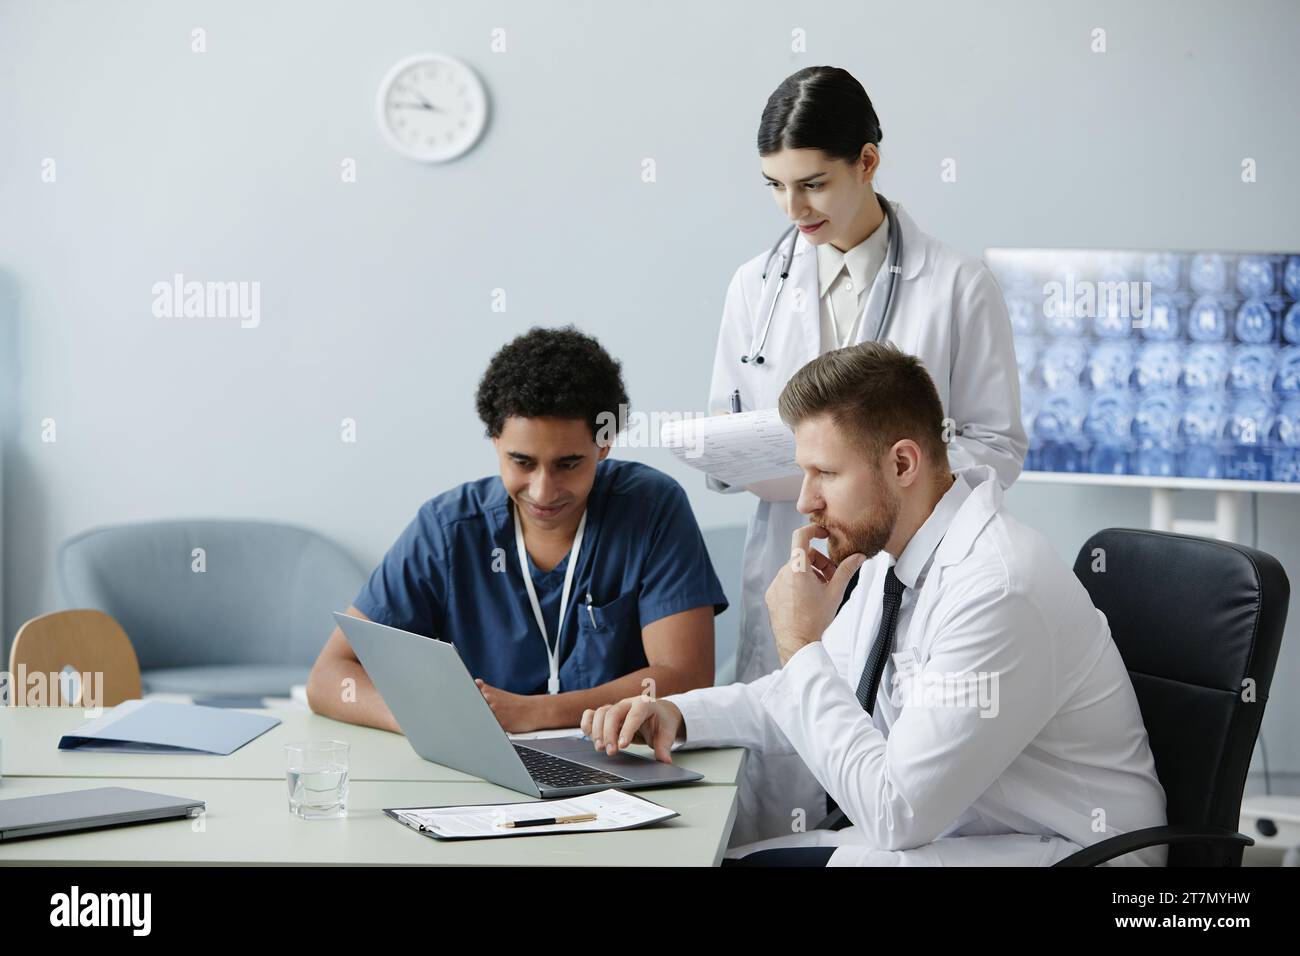 Gruppo multietnico di tre giovani medici che utilizzano un computer portatile insieme in clinica con raggi X sullo sfondo, spazio di copia Foto Stock